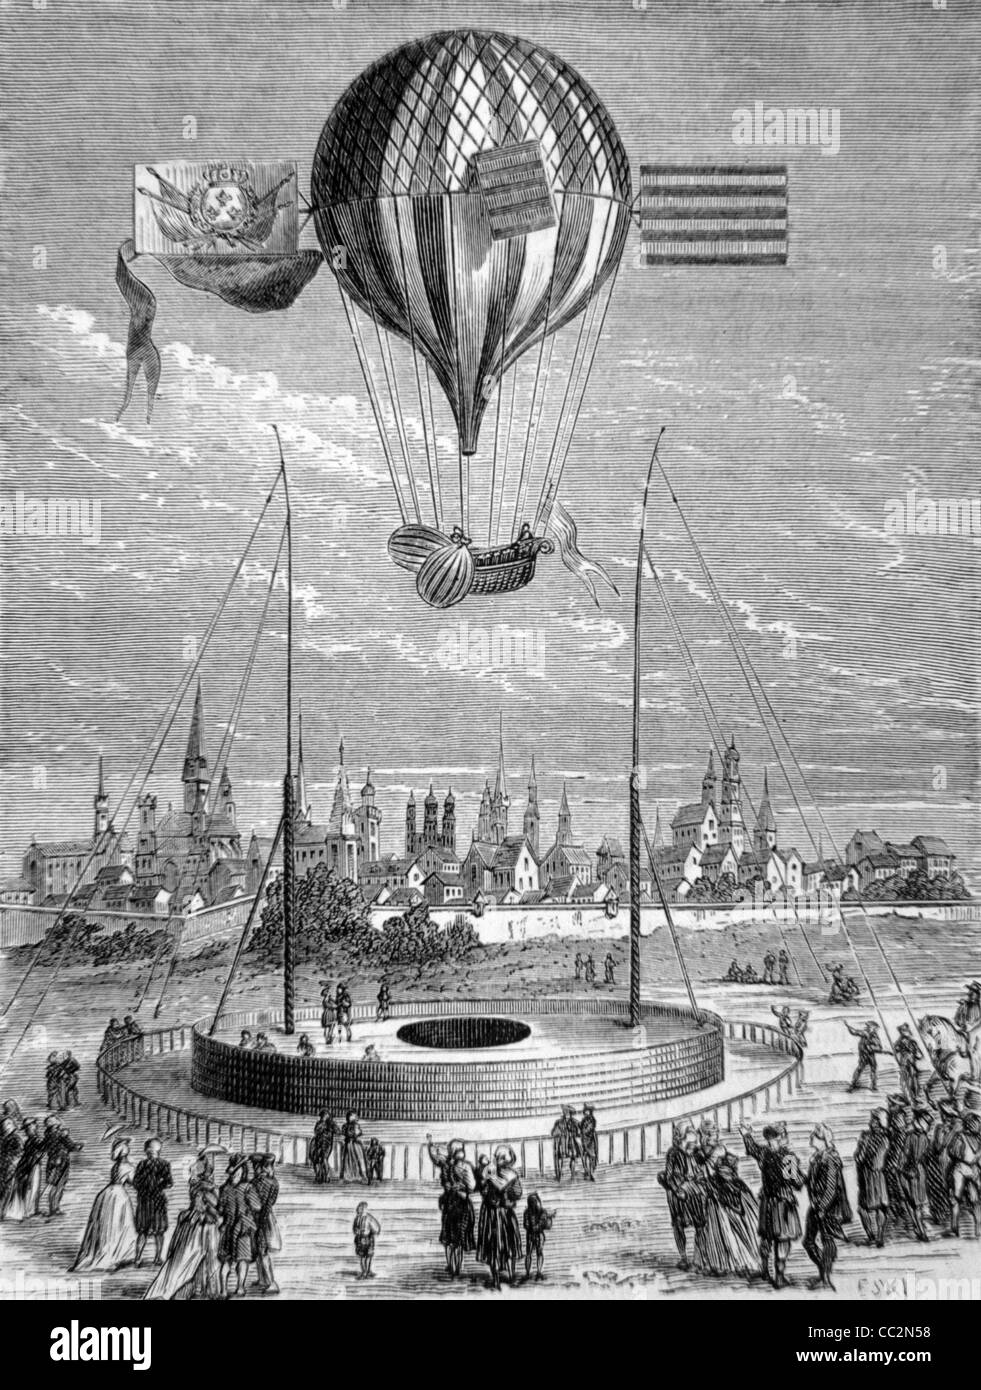 Montgolfier-Ballon, weltweit erste Heissluft Ballonfahrt in Paris, November 1783. C19th Gravur Stockfoto